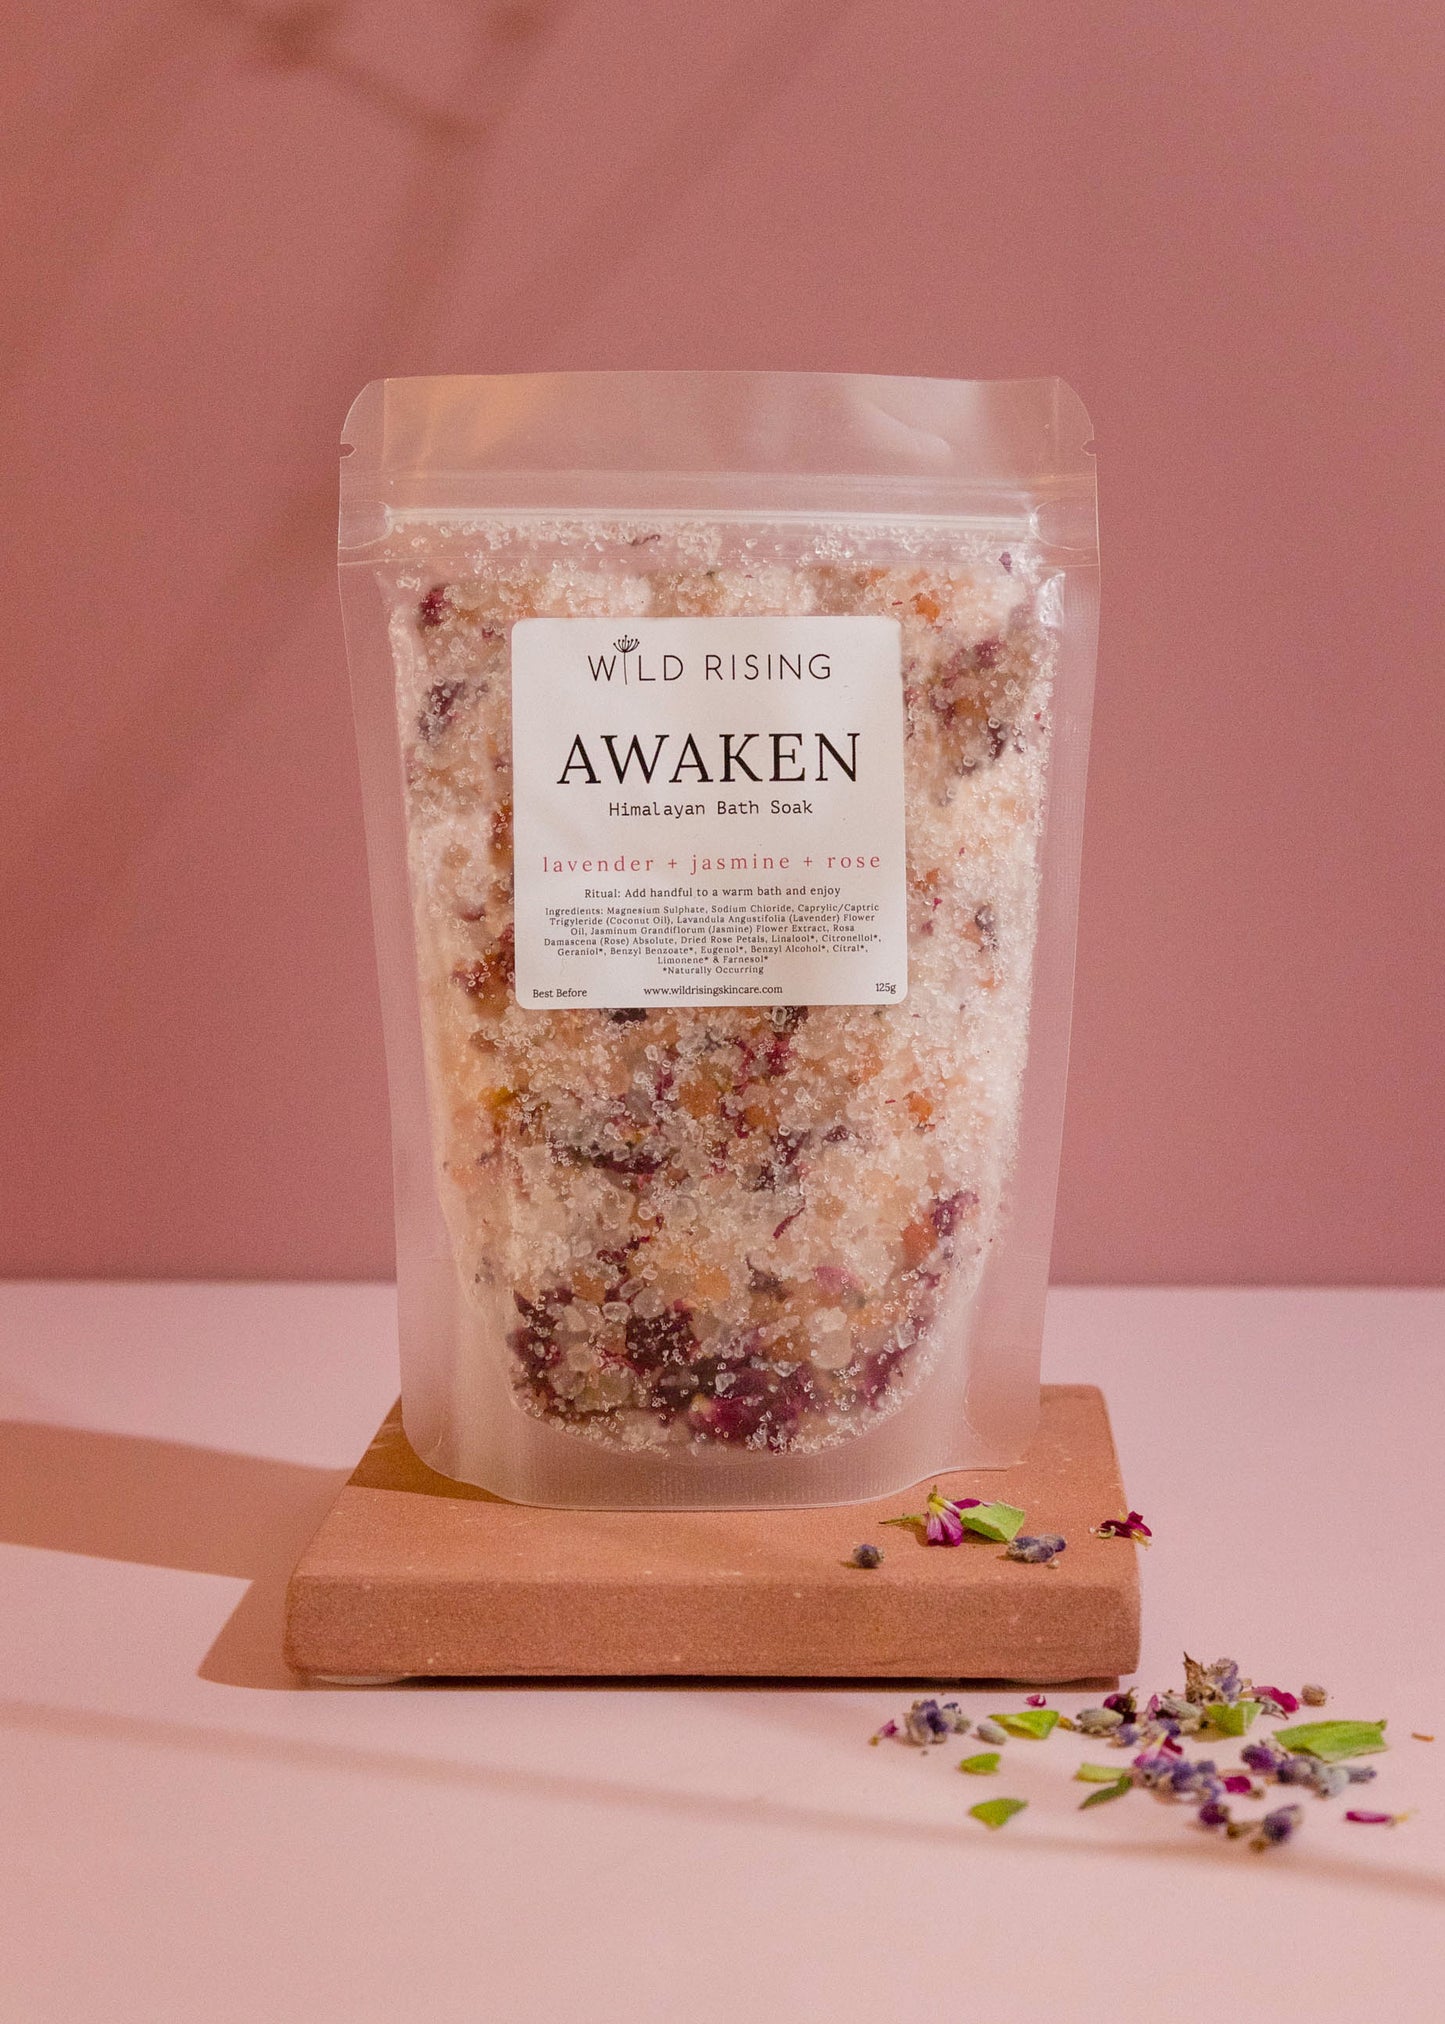 awaken bath salt pouch lavender jasmine and rose